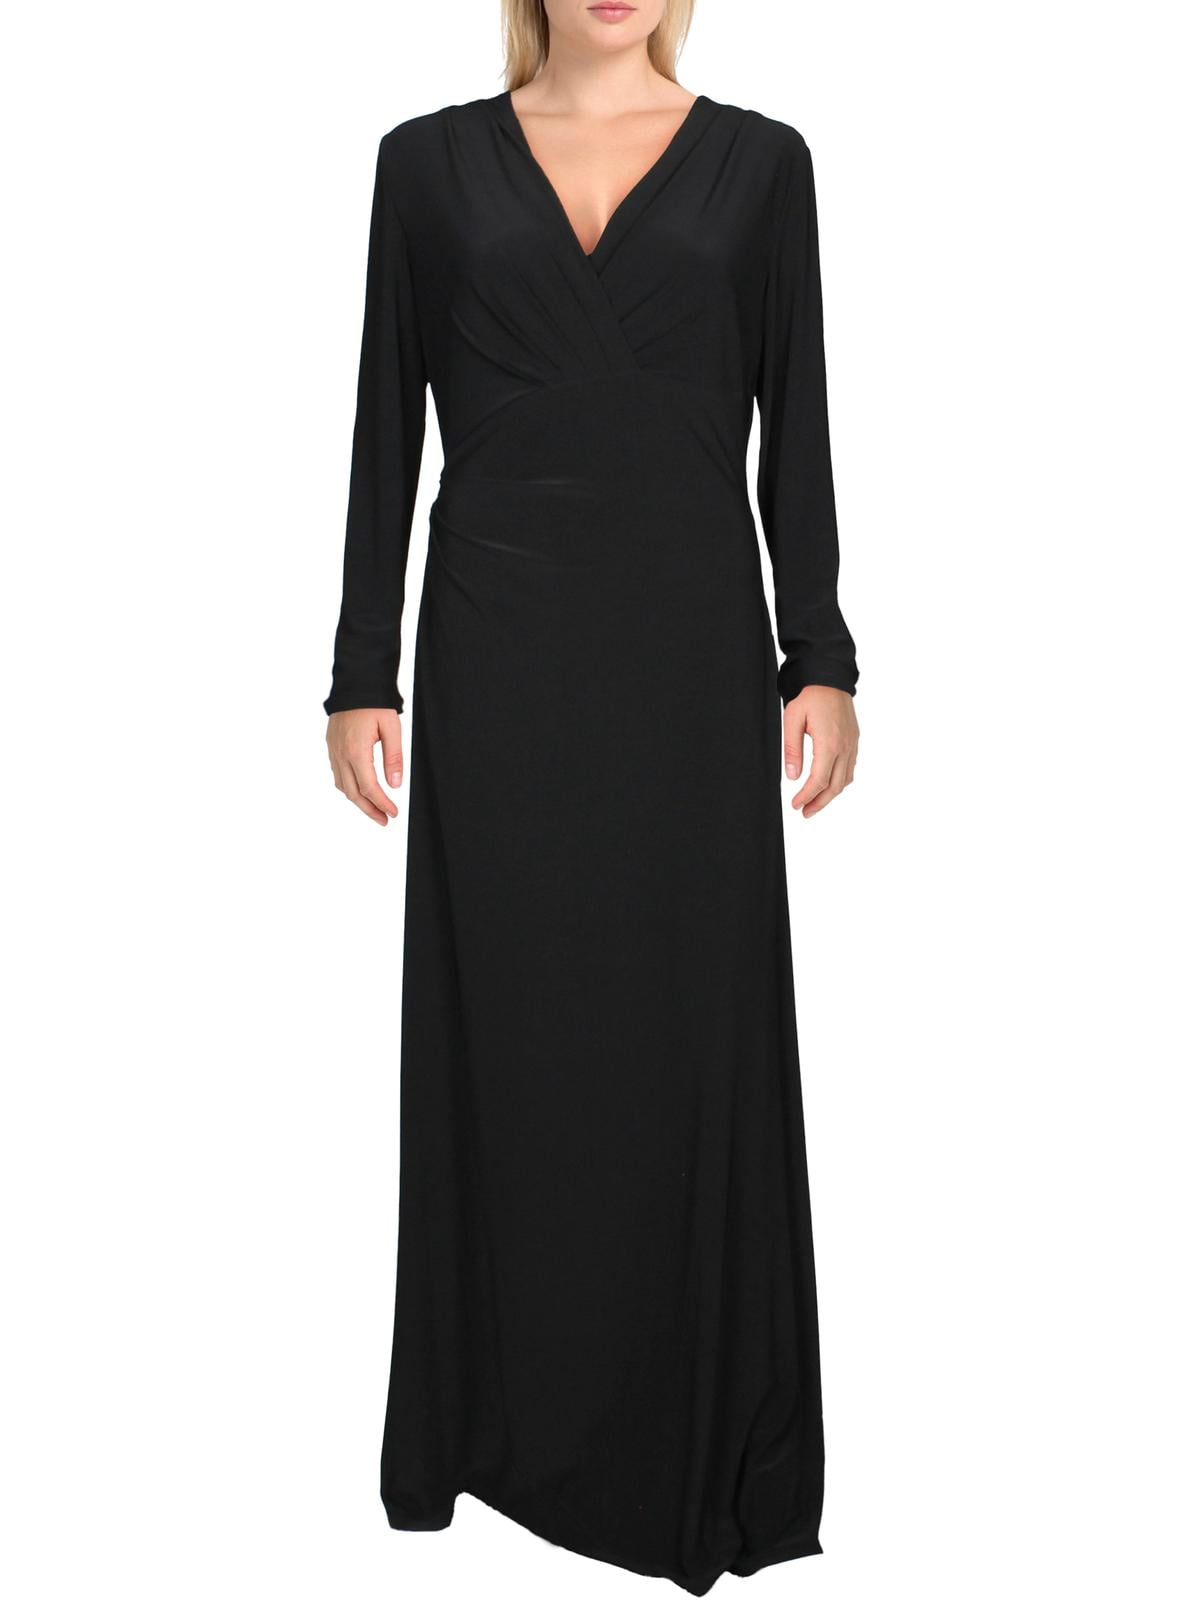 Lauren Ralph Lauren Womens Rowenah Surplice Pintuck Formal Dress Black 4